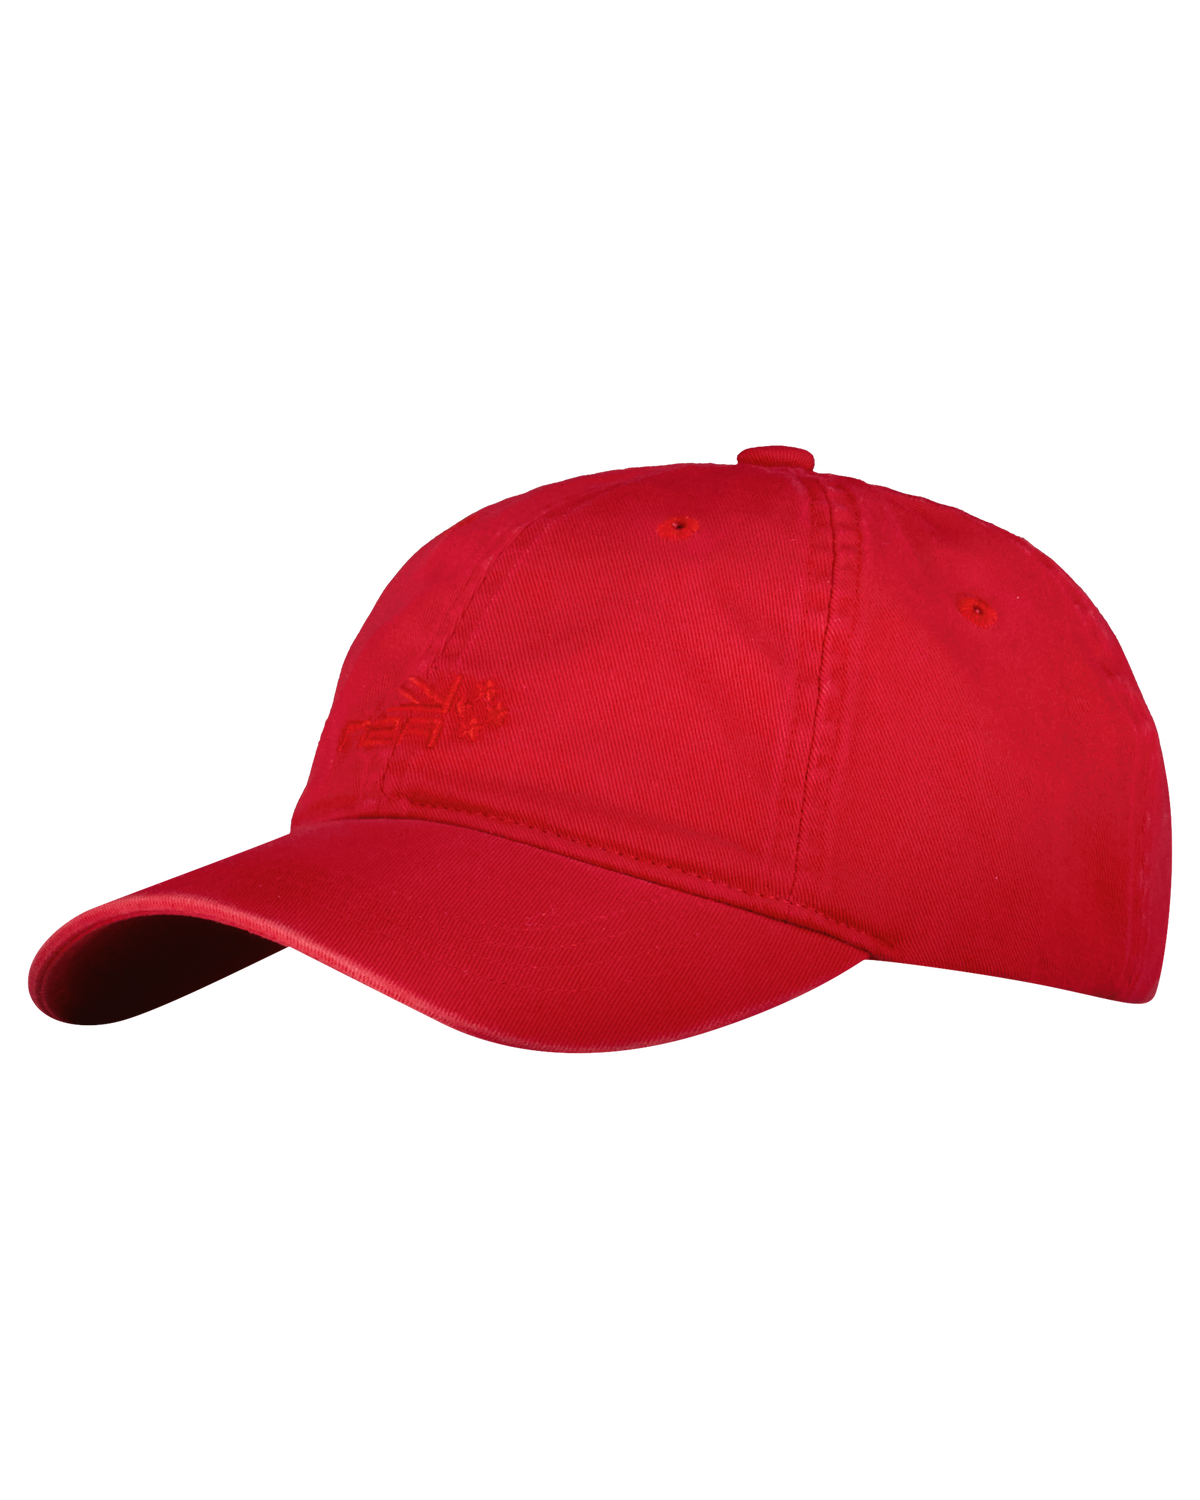 Cotton cap - Carmine red